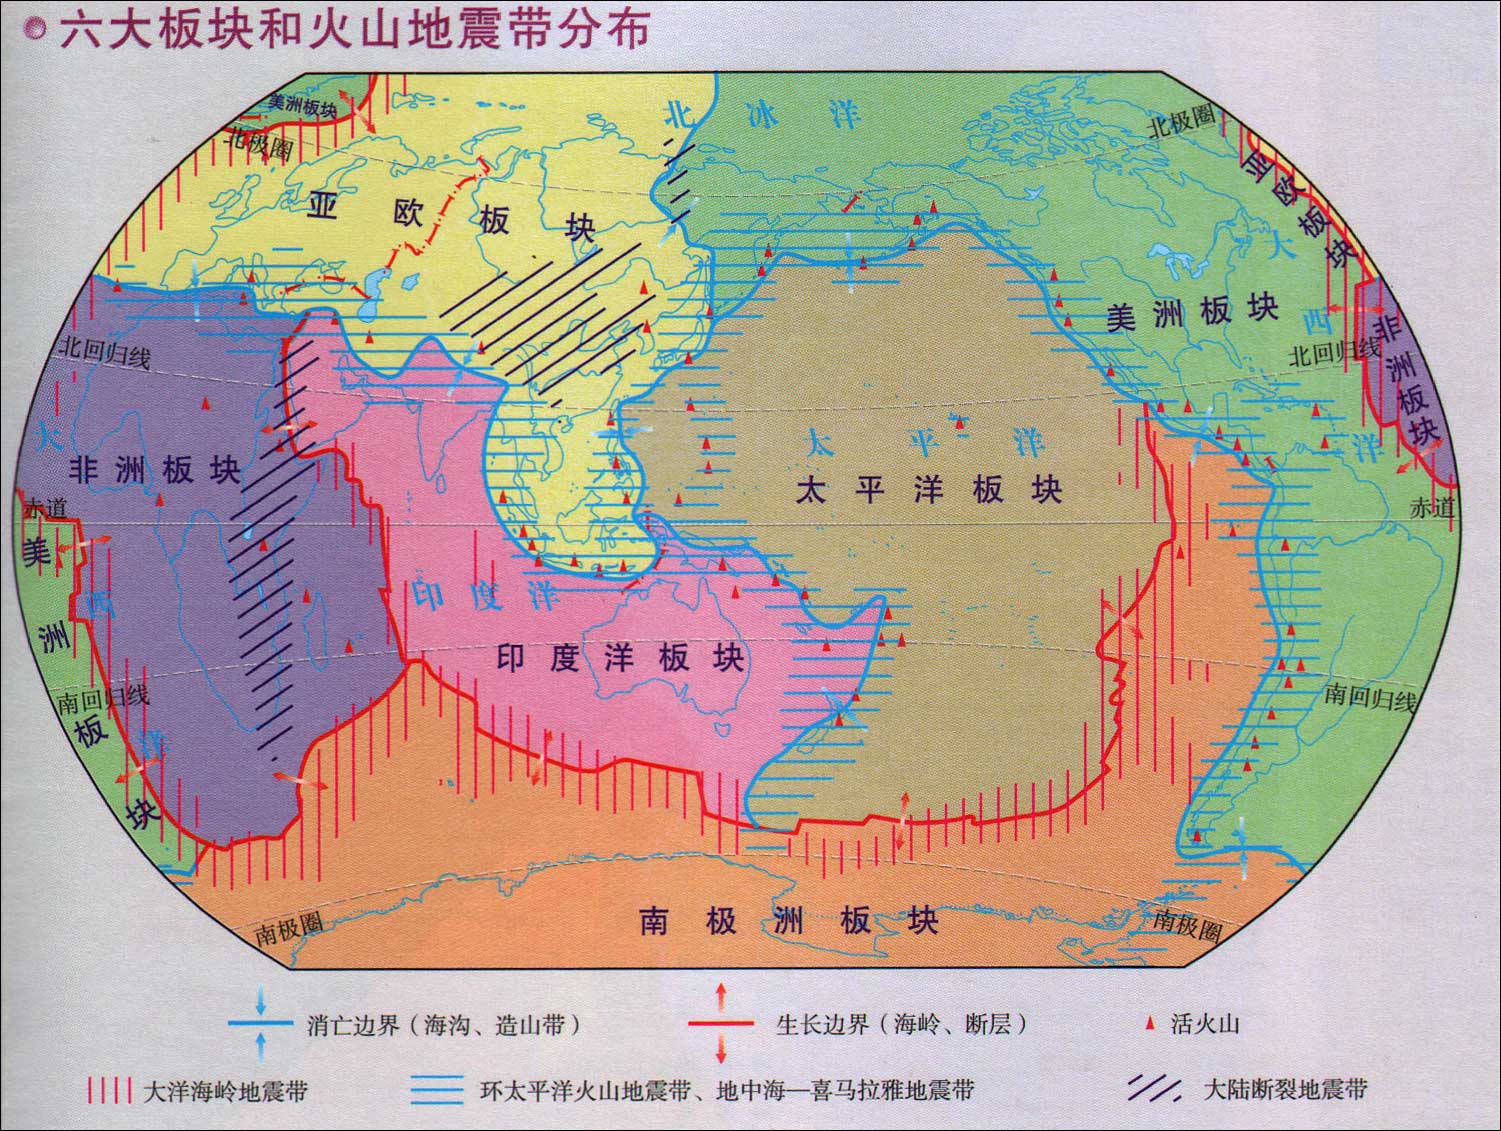 地球六大板块和火山地震带分布图_世界地理地图查询